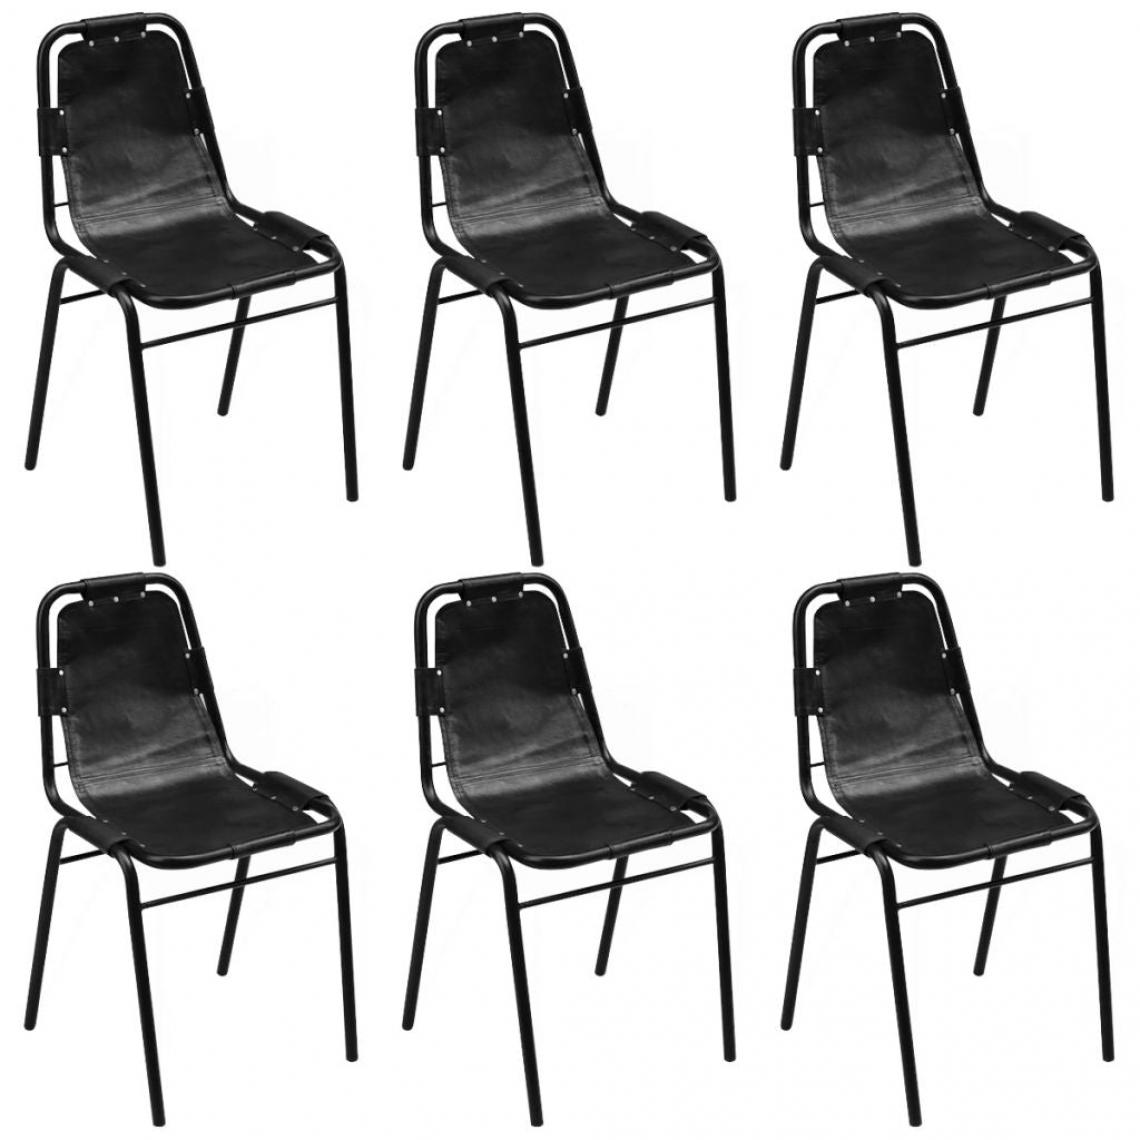 Decoshop26 - Lot de 6 chaises de salle à manger cuisine design classique cuir véritable noir CDS022670 - Chaises